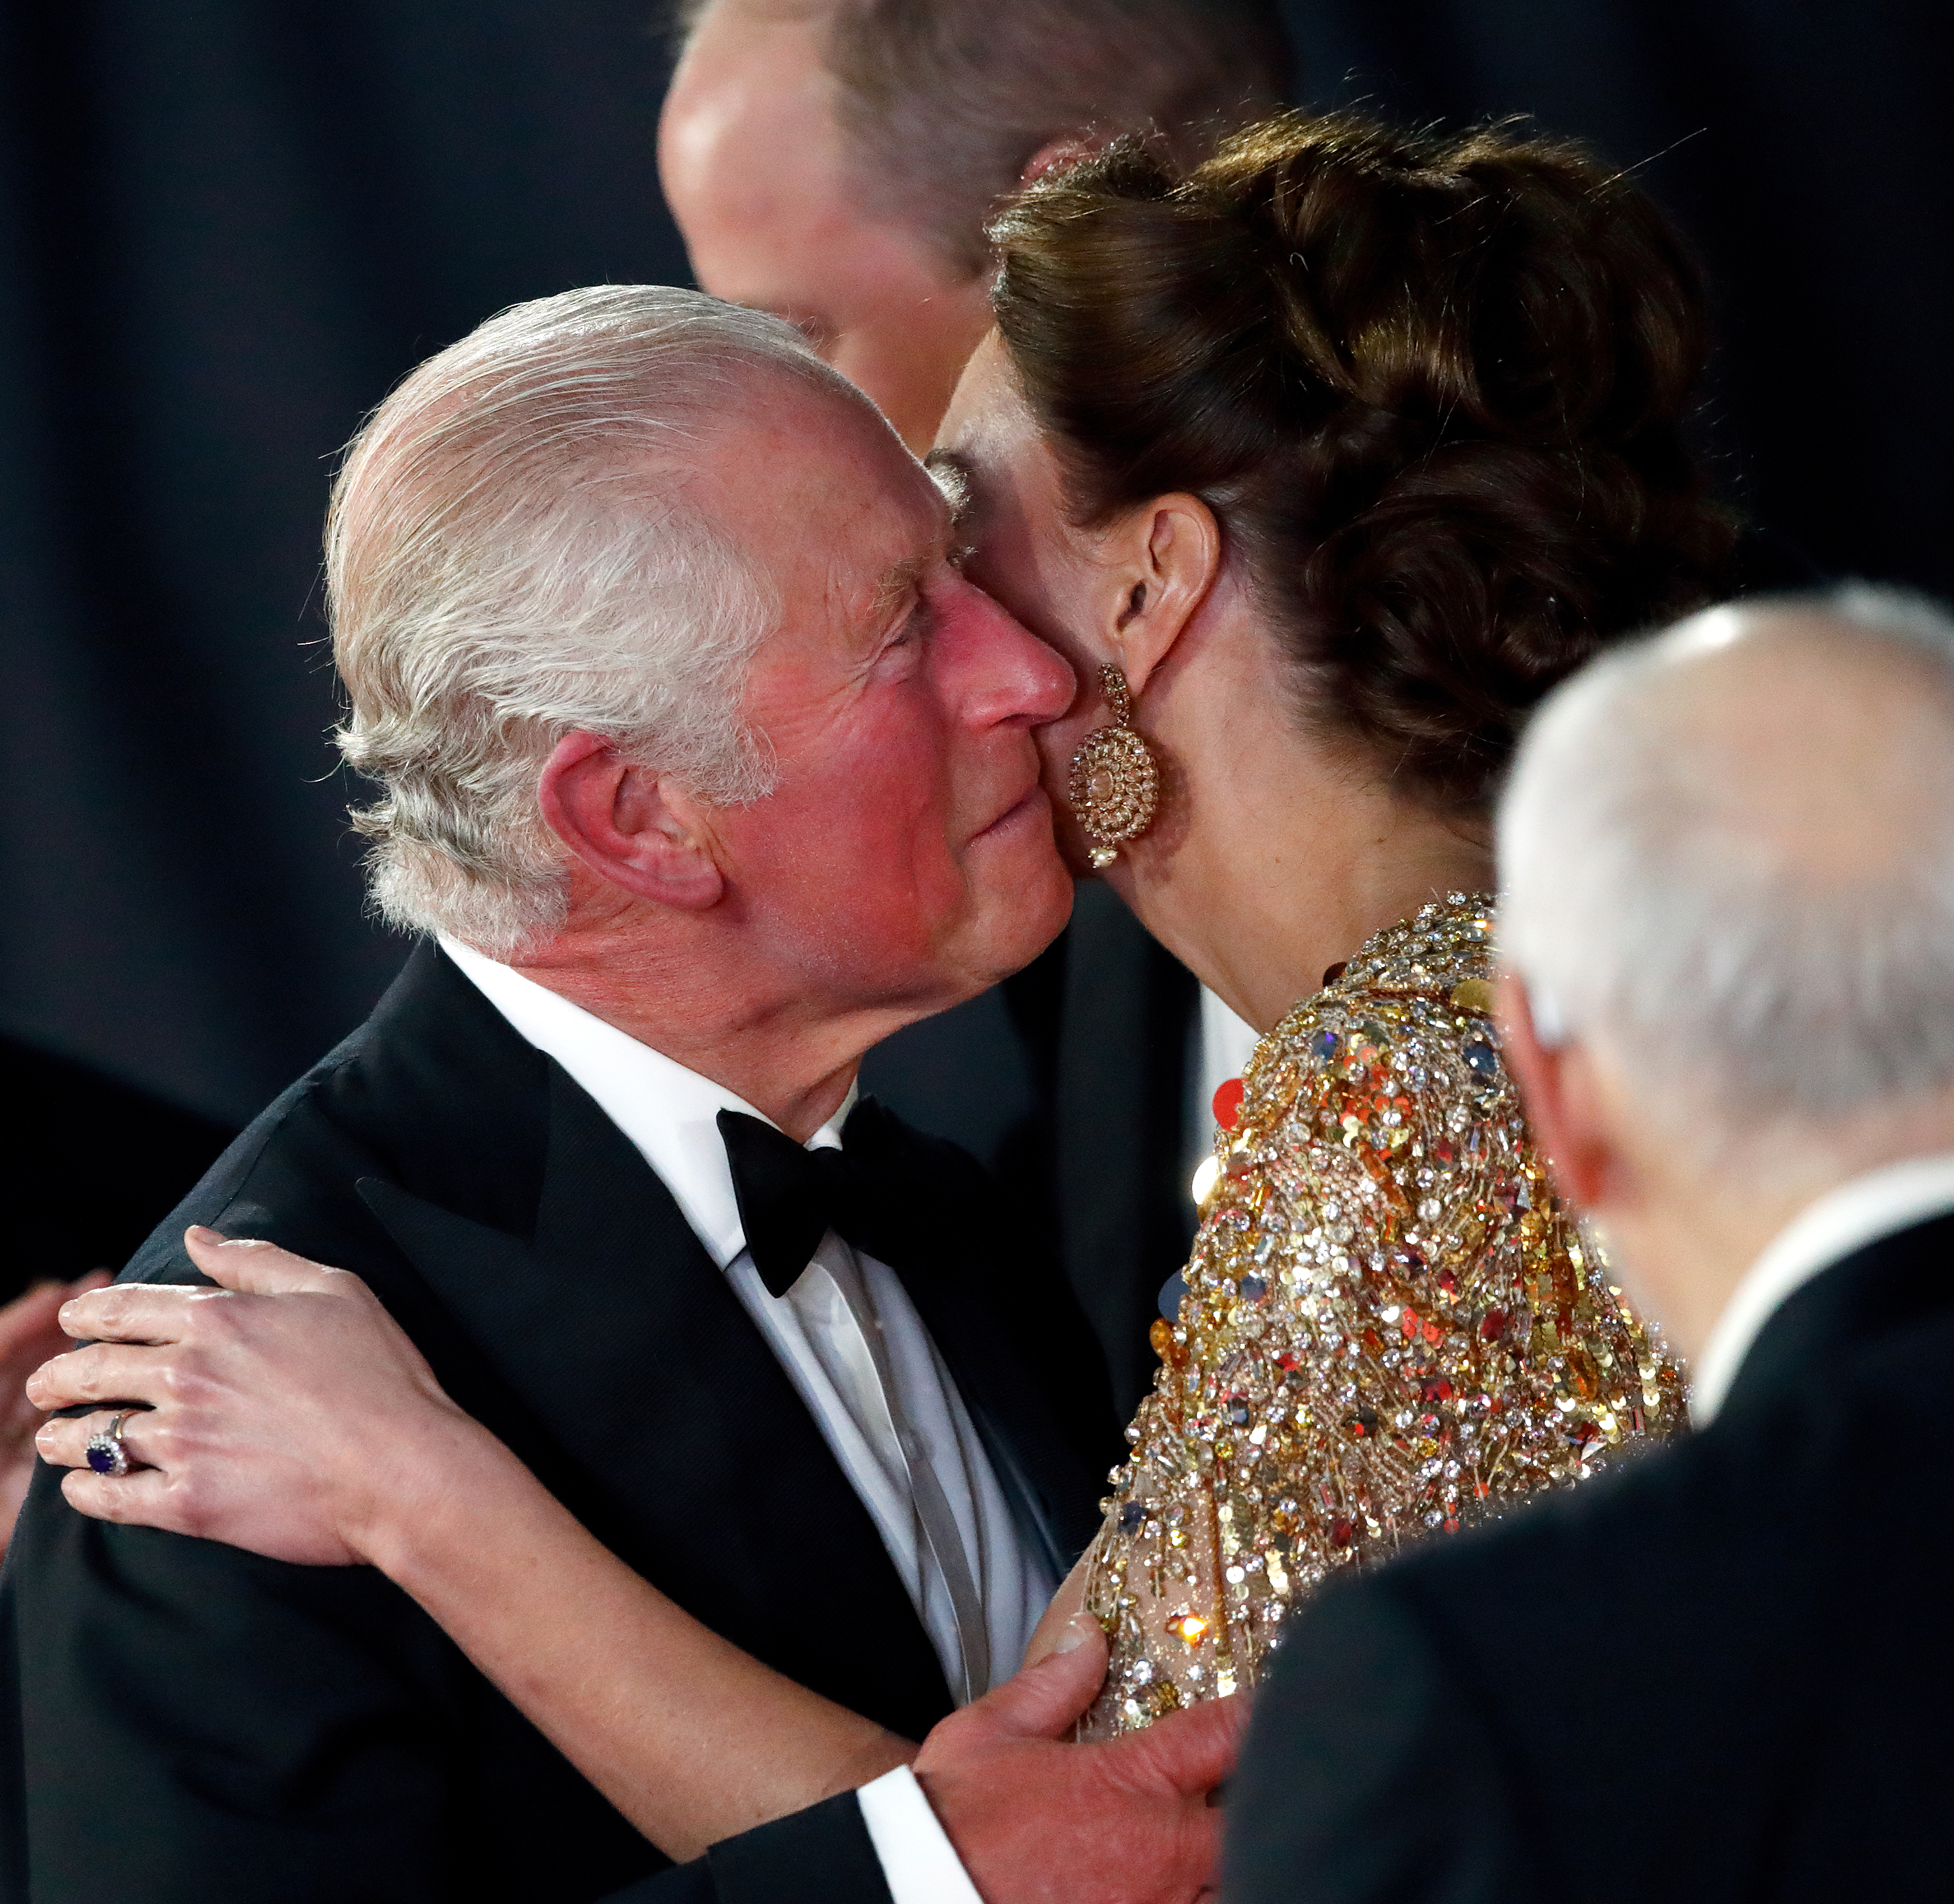 El rey Charles III besando a la princesa de Gales en el estreno mundial de "No Time To Die" en Londres en 2021 | Fuente: Getty Images